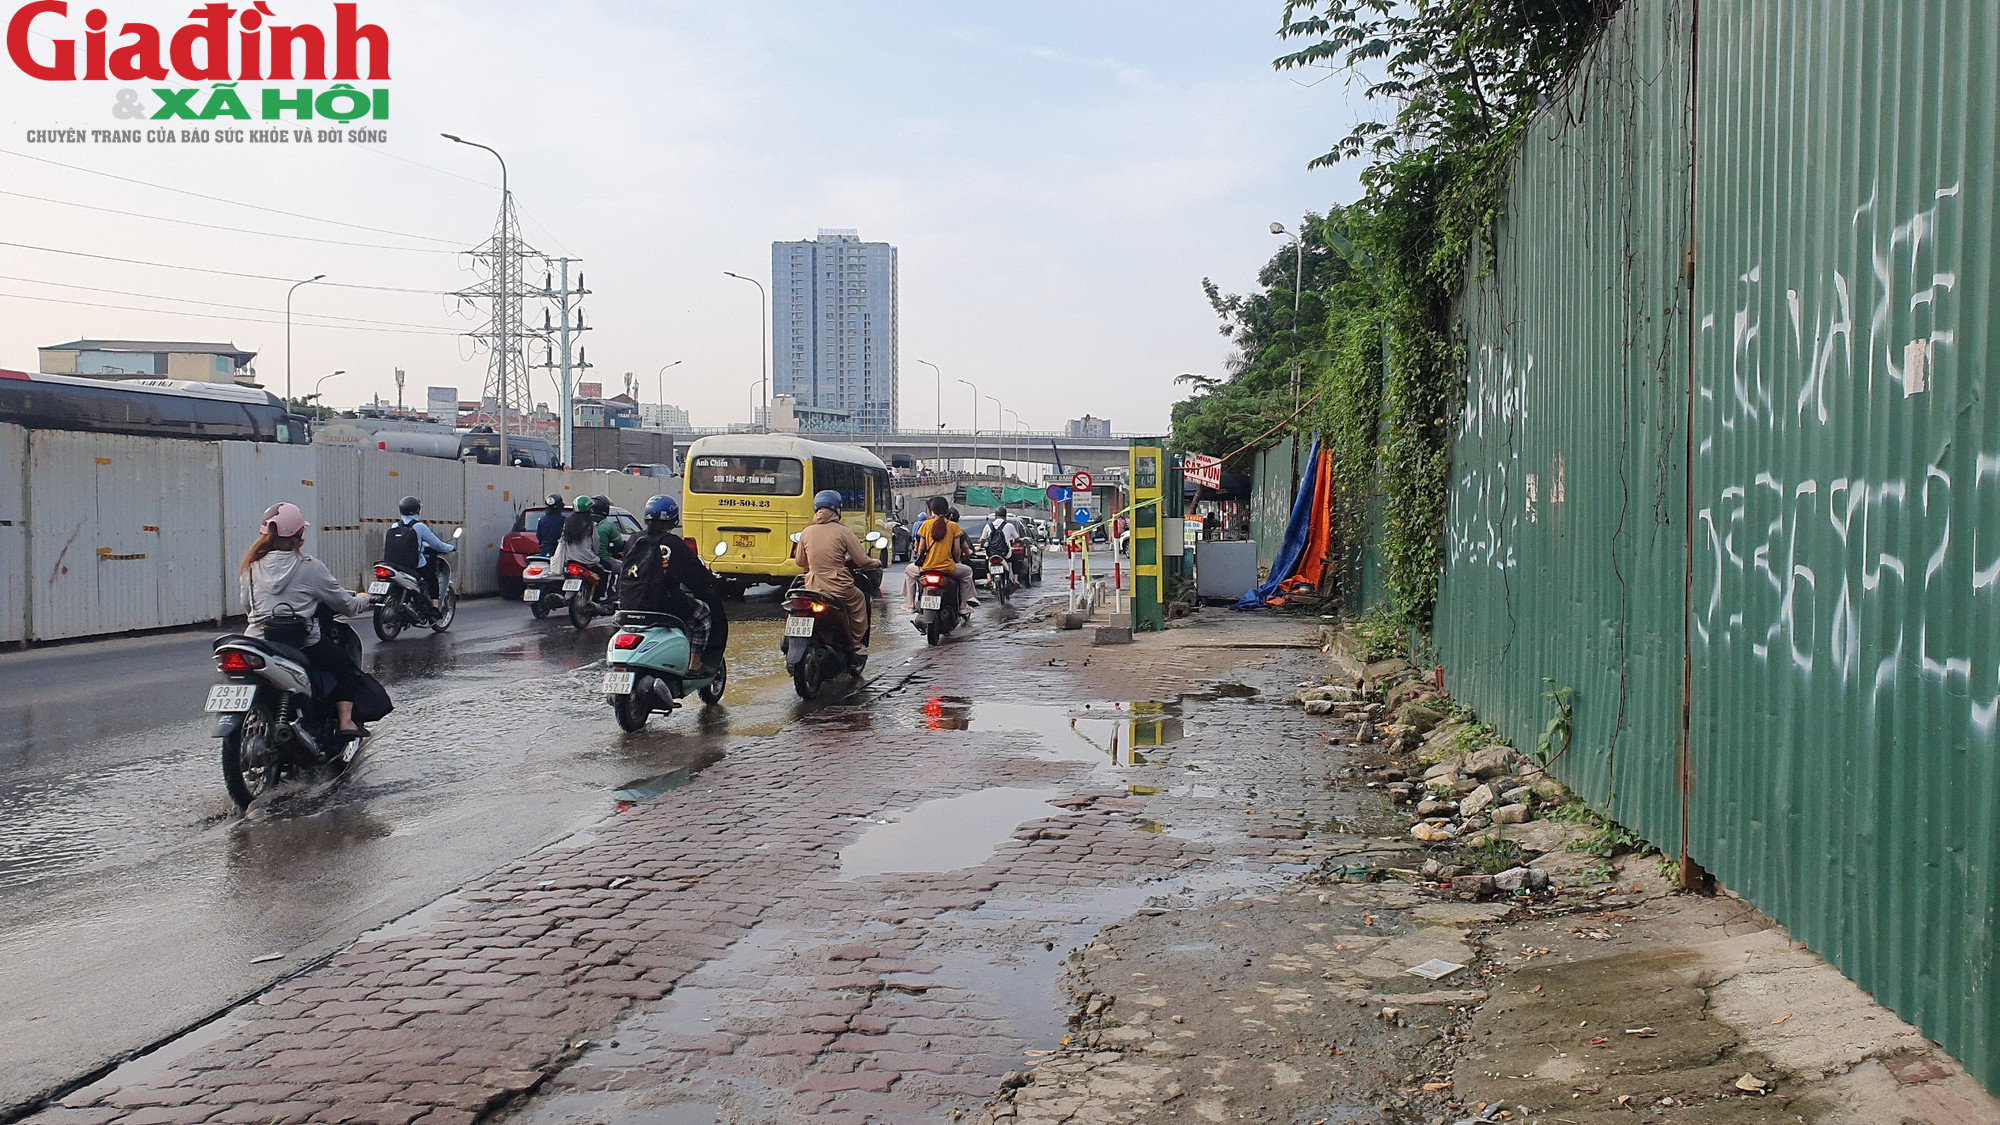 Nhiều điểm chờ xe buýt ở Hà Nội xuống cấp, có nơi đặt ngay cạnh bot điện cao thế - Ảnh 9.